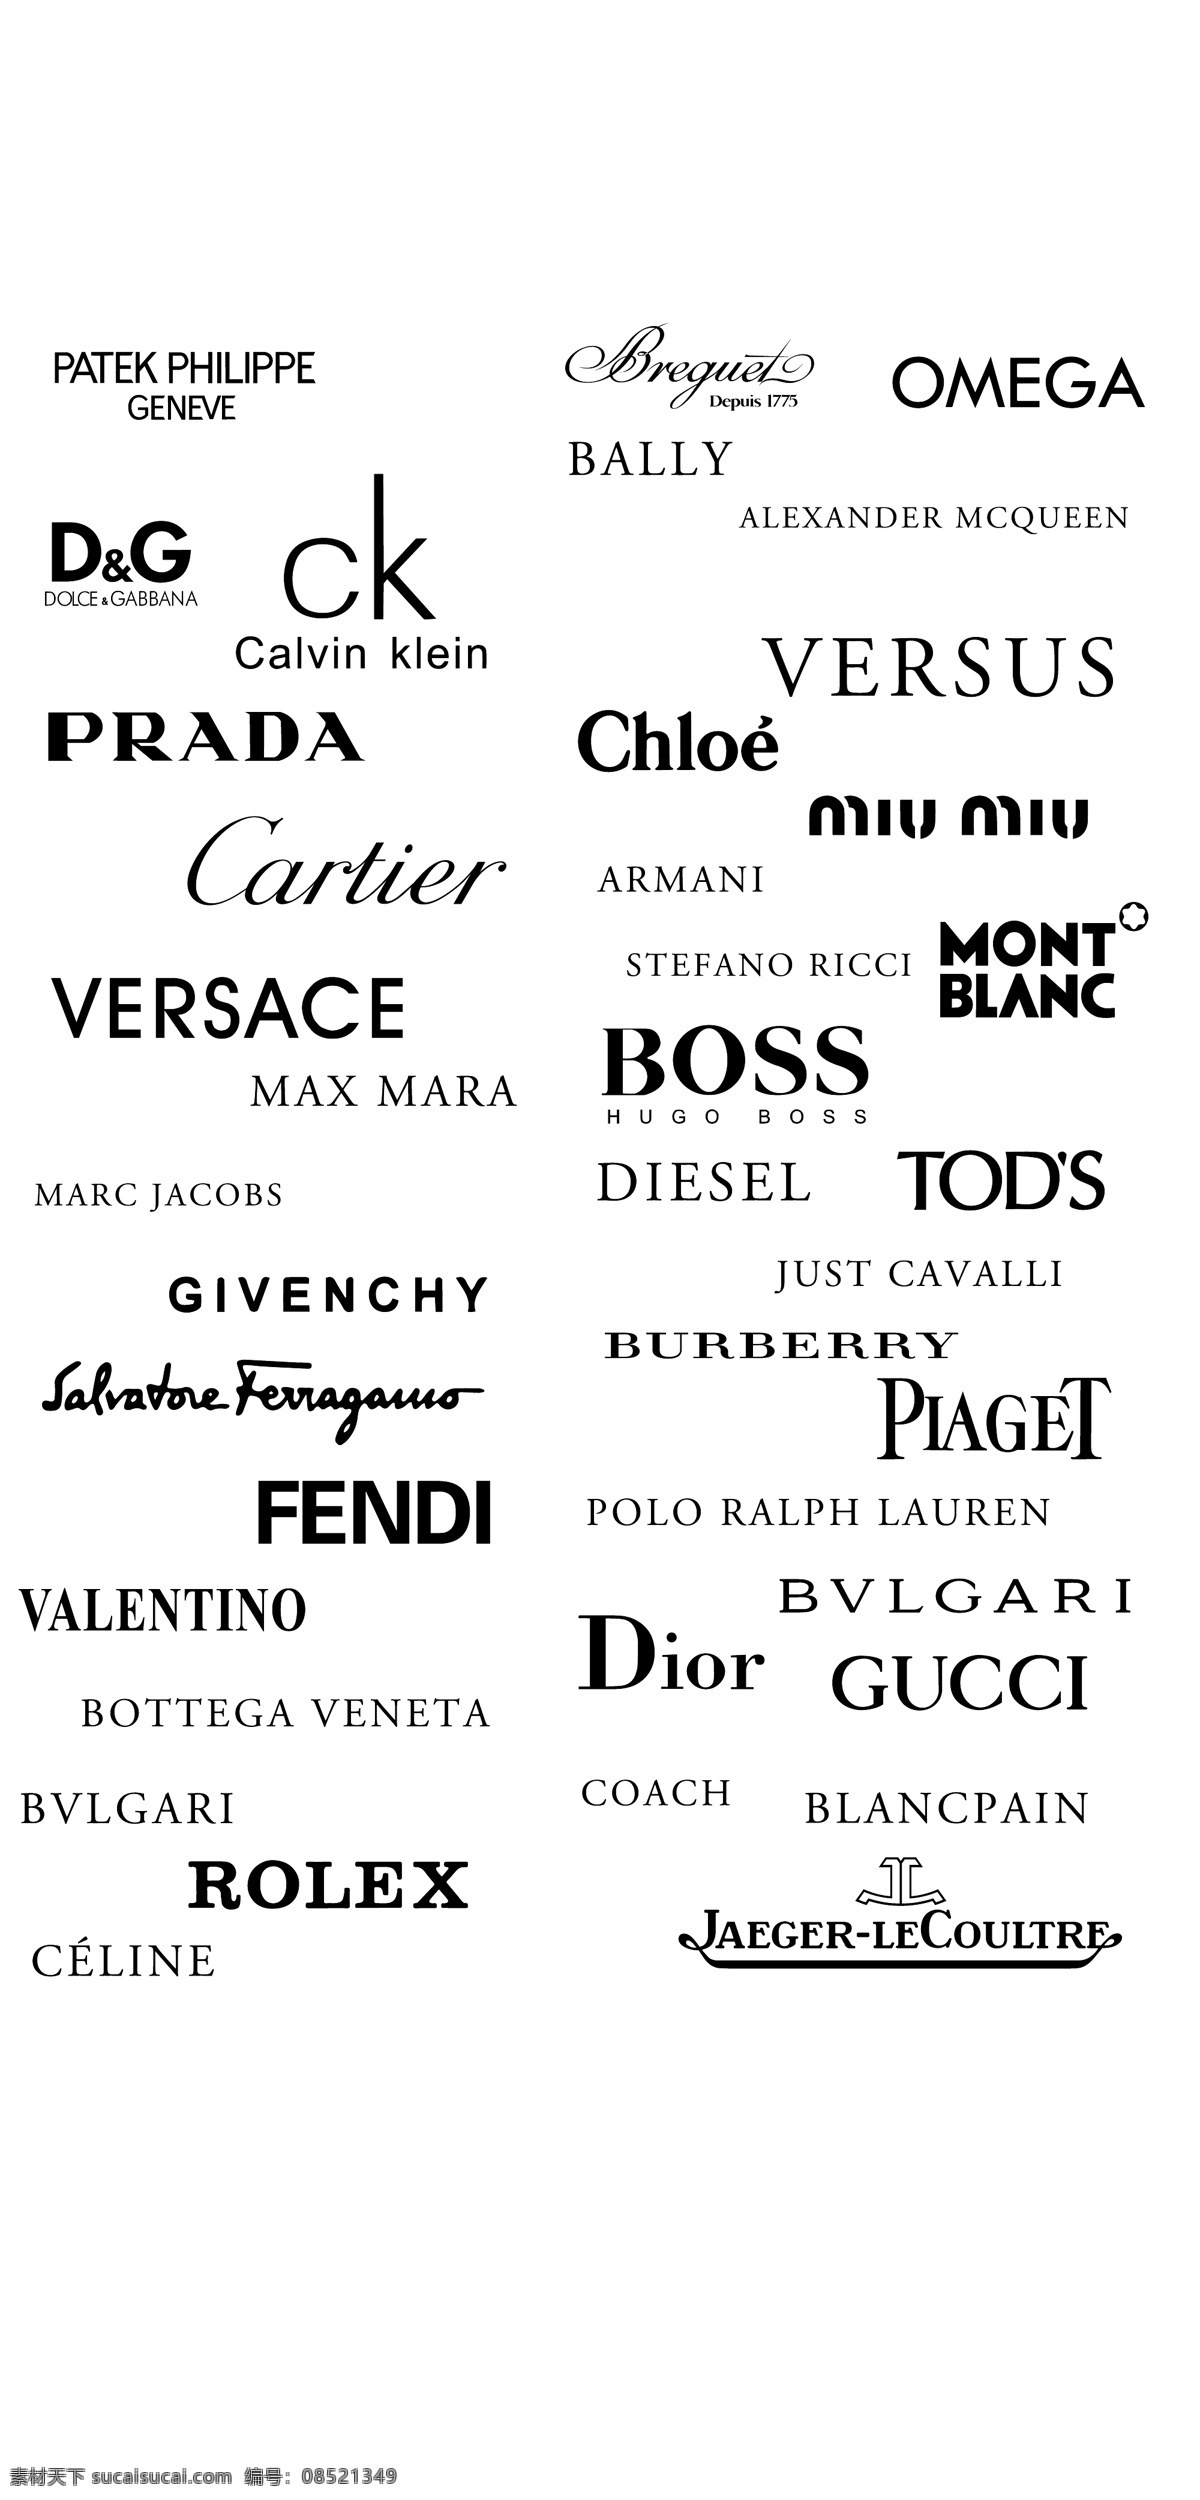 奢侈 品牌 logo 矢量 dior prada 奢侈品 gucci boss rolex versace omega dampg tods 矢量图 其他矢量图